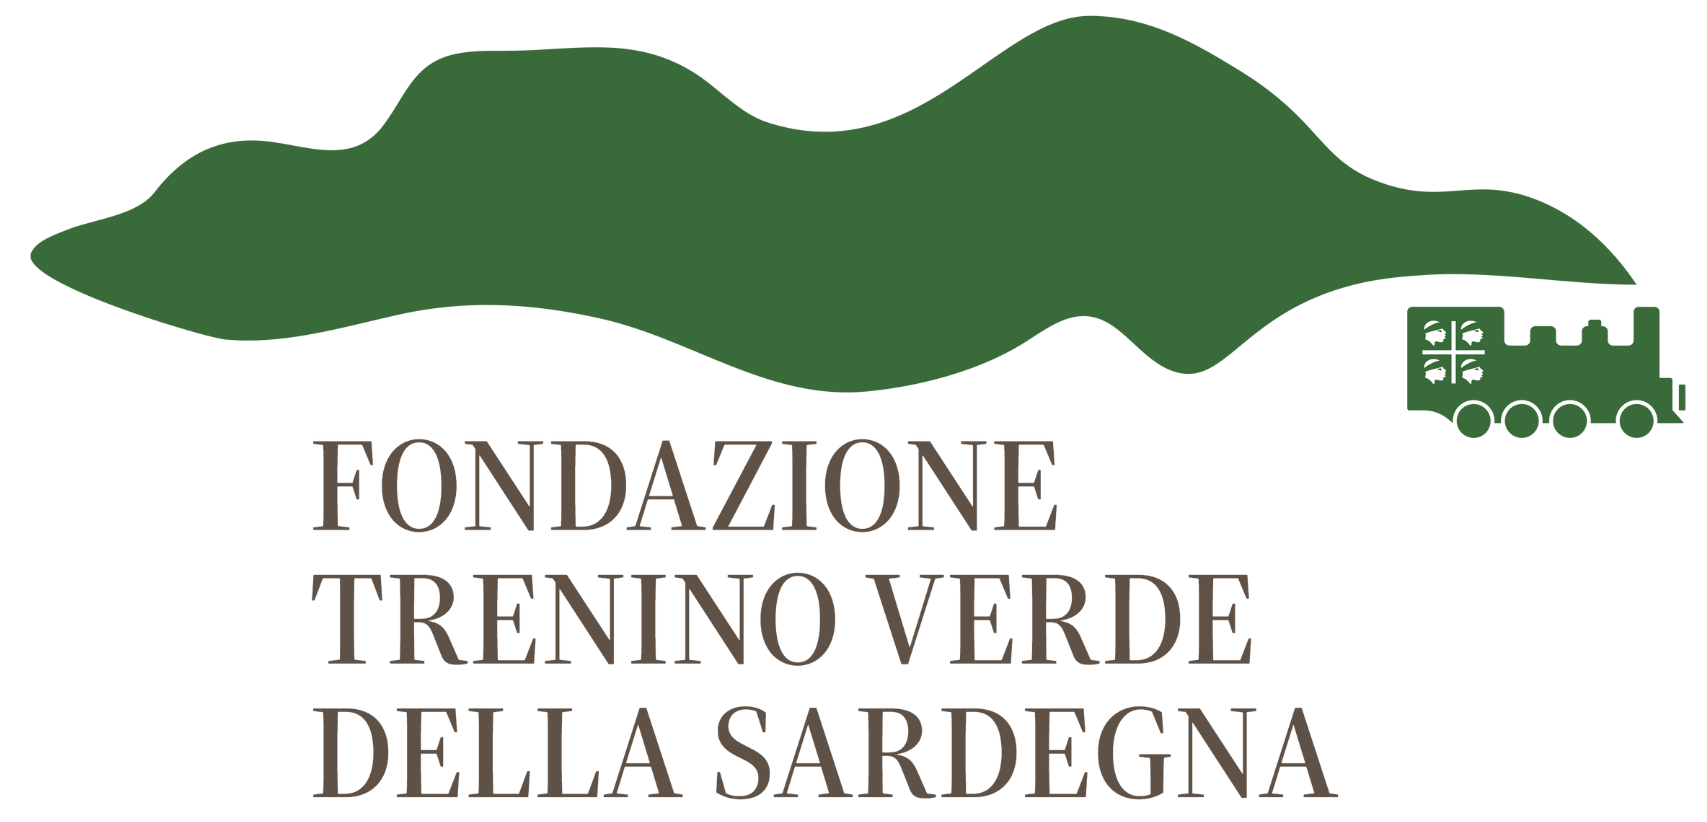 Fondazione Trenino Verde della Sardegna